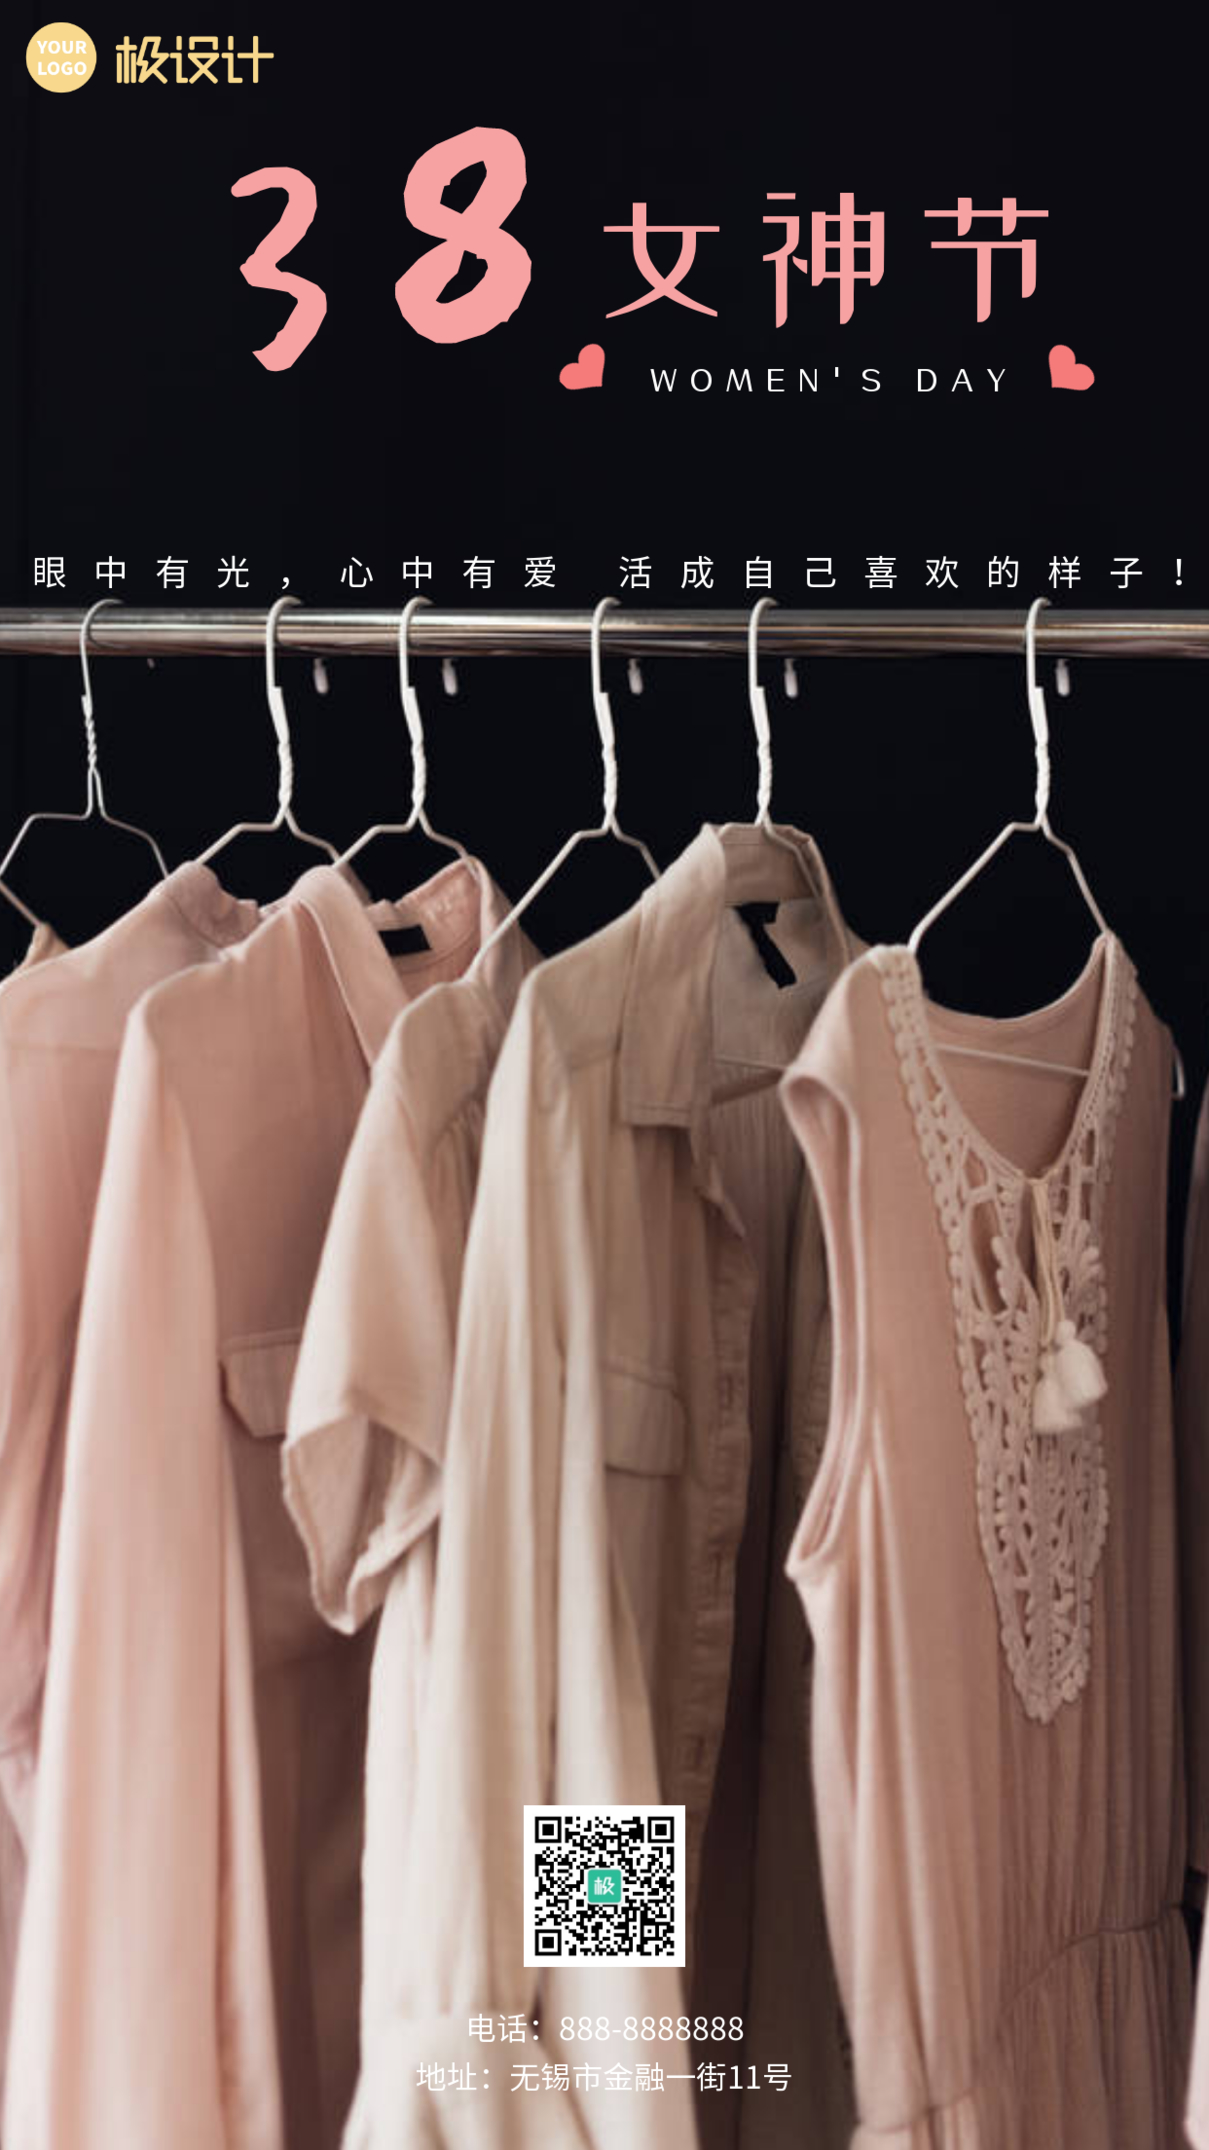 3.8妇女节女鞋促销宣传摄影风手机海报